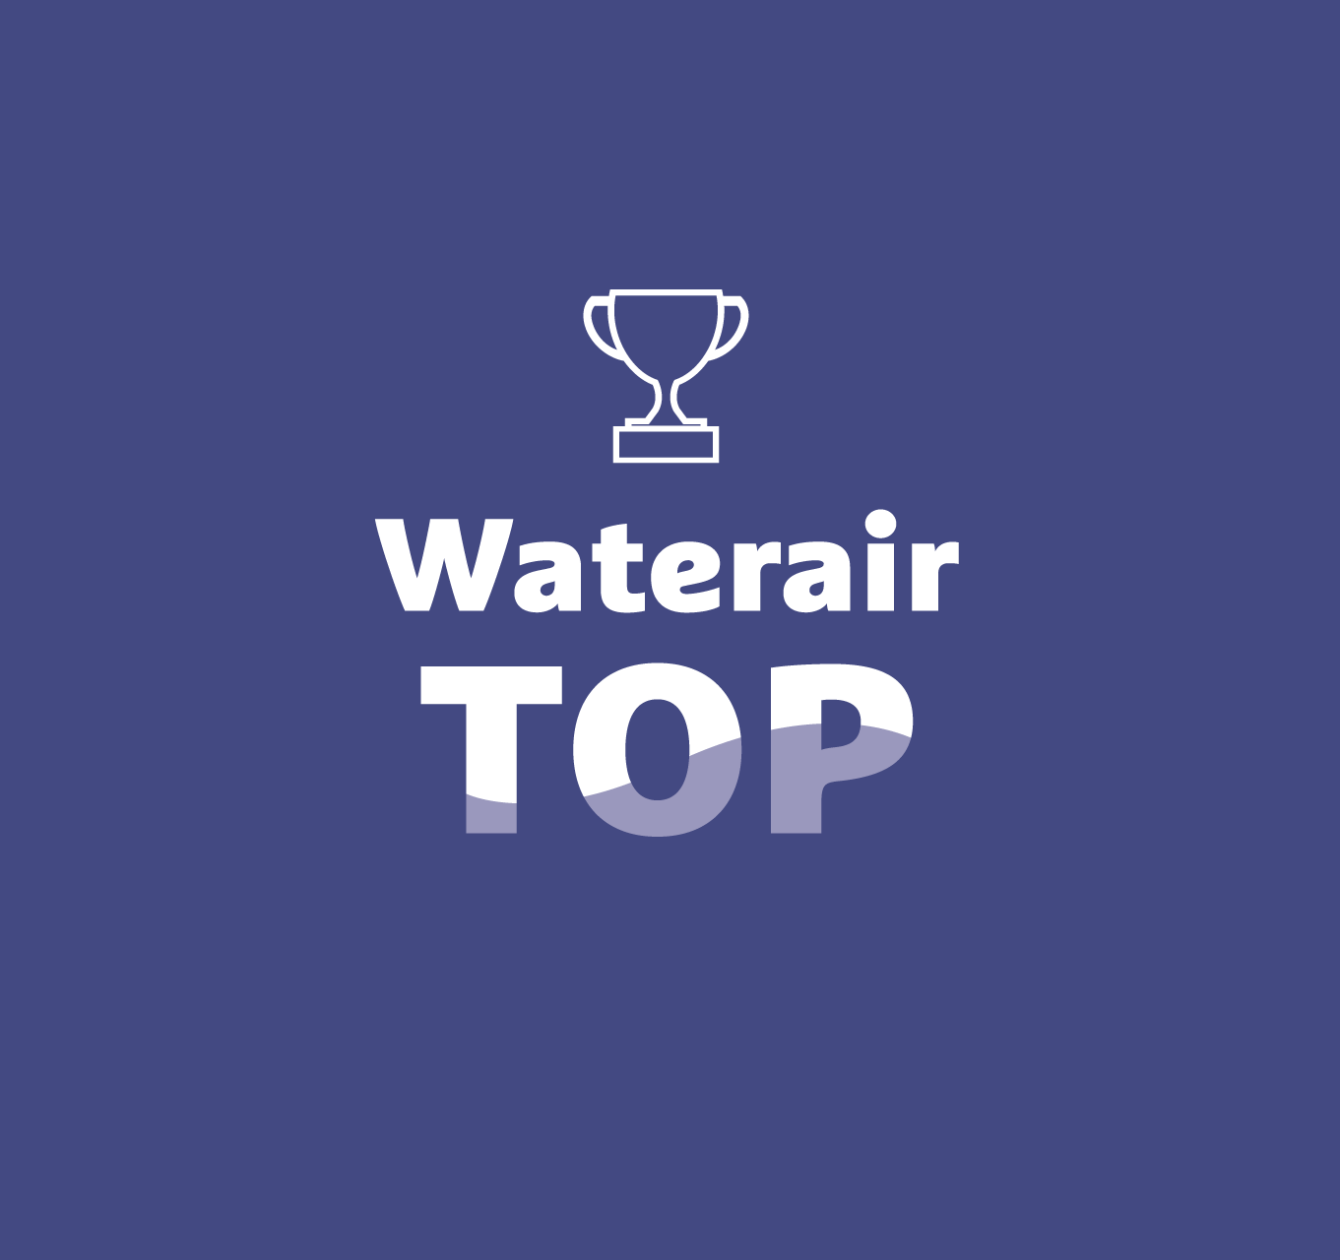 Waterair Top: najlepsze rozwiązania technologiczne Waterair do Twojej dyspozycji